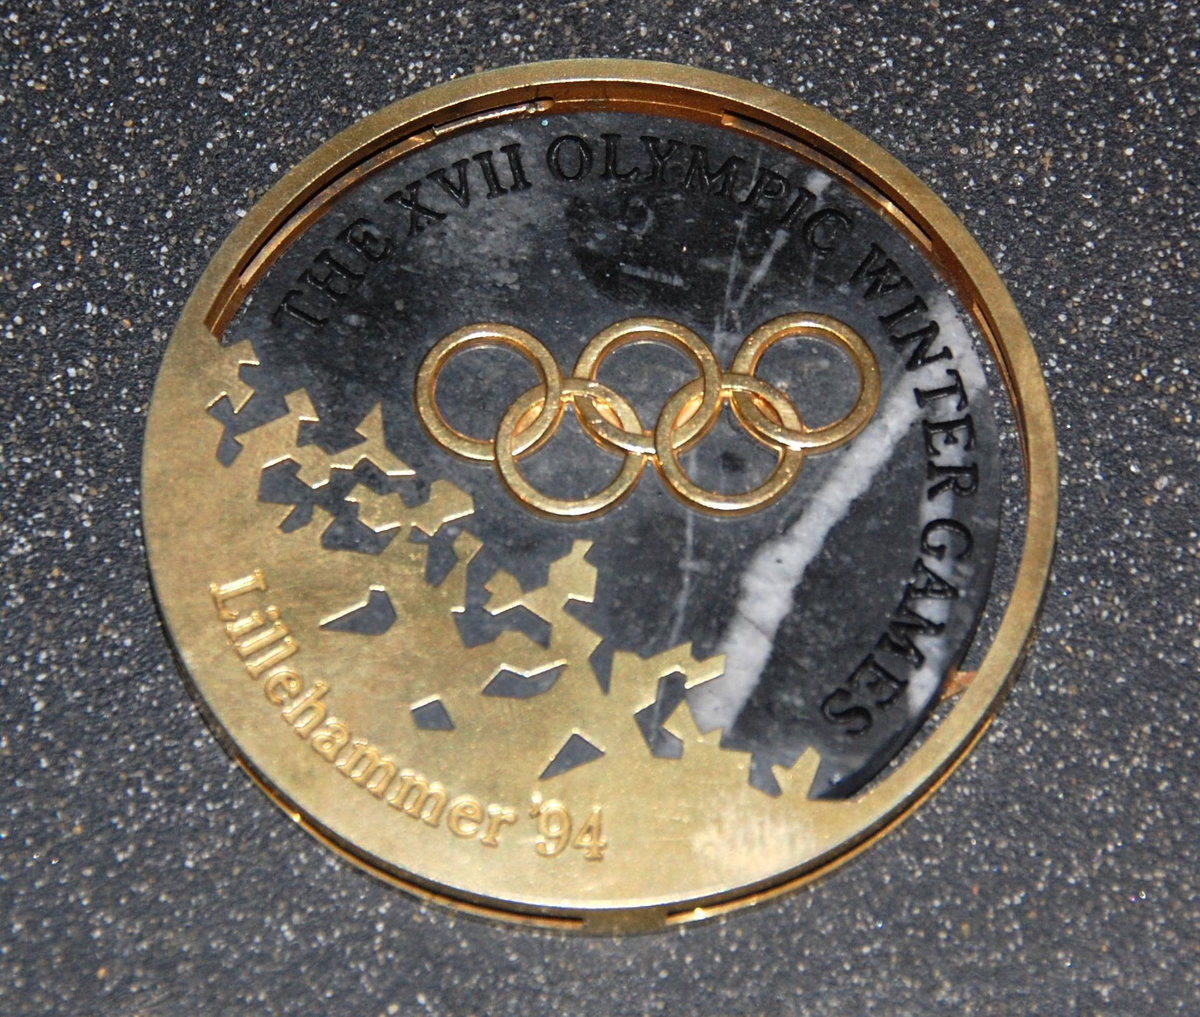 Medalje av metall og stein. På den ene siden er det motiv av de olympiske ringene over krystallmønster. På den andre siden er det piktogram av en skøyteløper og emblemet for de olympiske vinterleker på Lillehammer i 1994. Medaljen er plassert på et stativ av granitt.